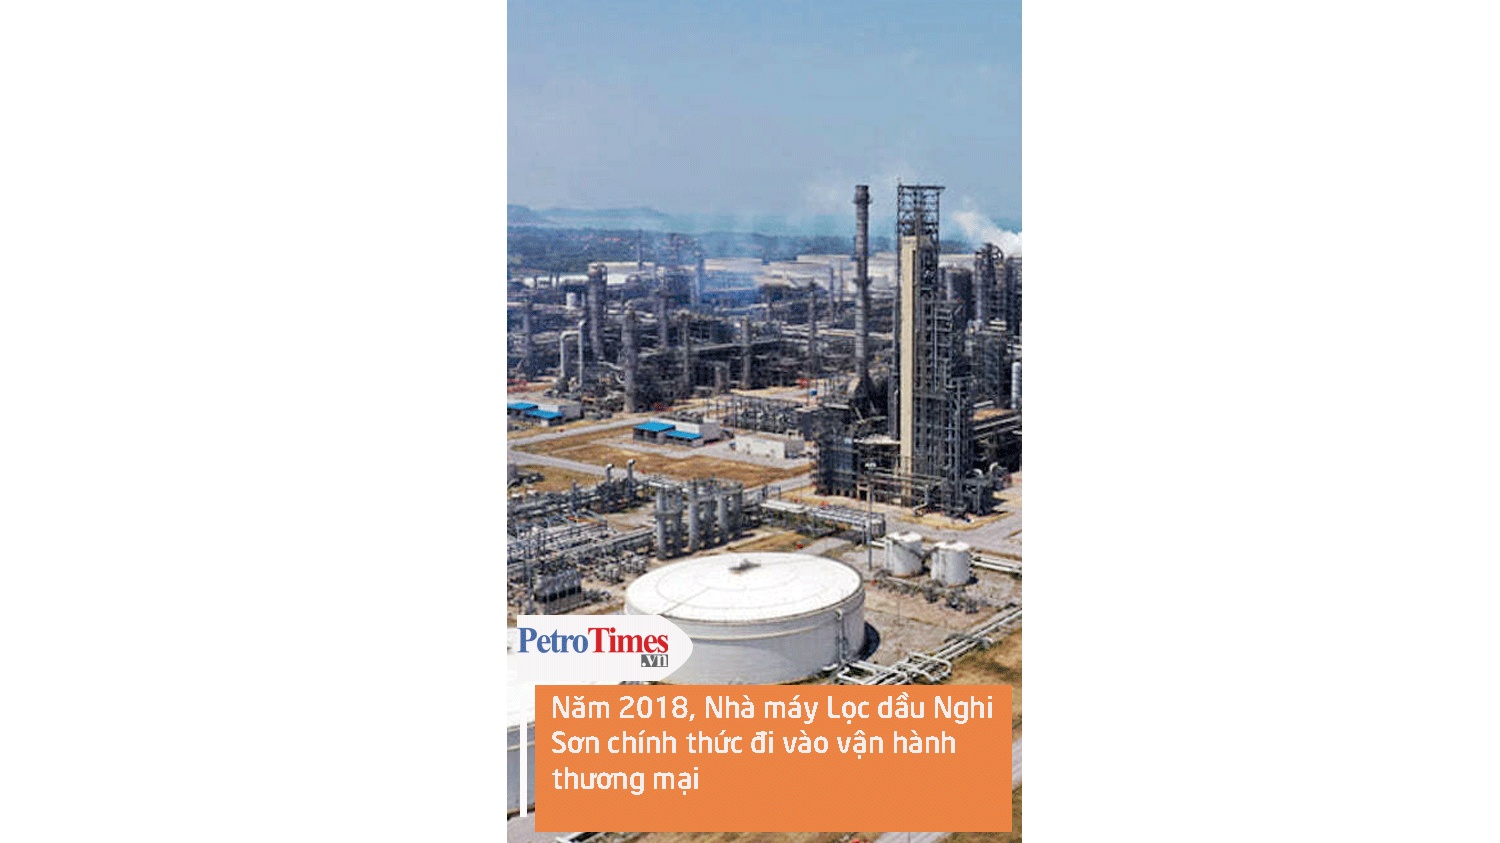 [Video] Năm 2018, Nhà máy Lọc dầu Nghi Sơn chính thức đi vào vận hành thương mại